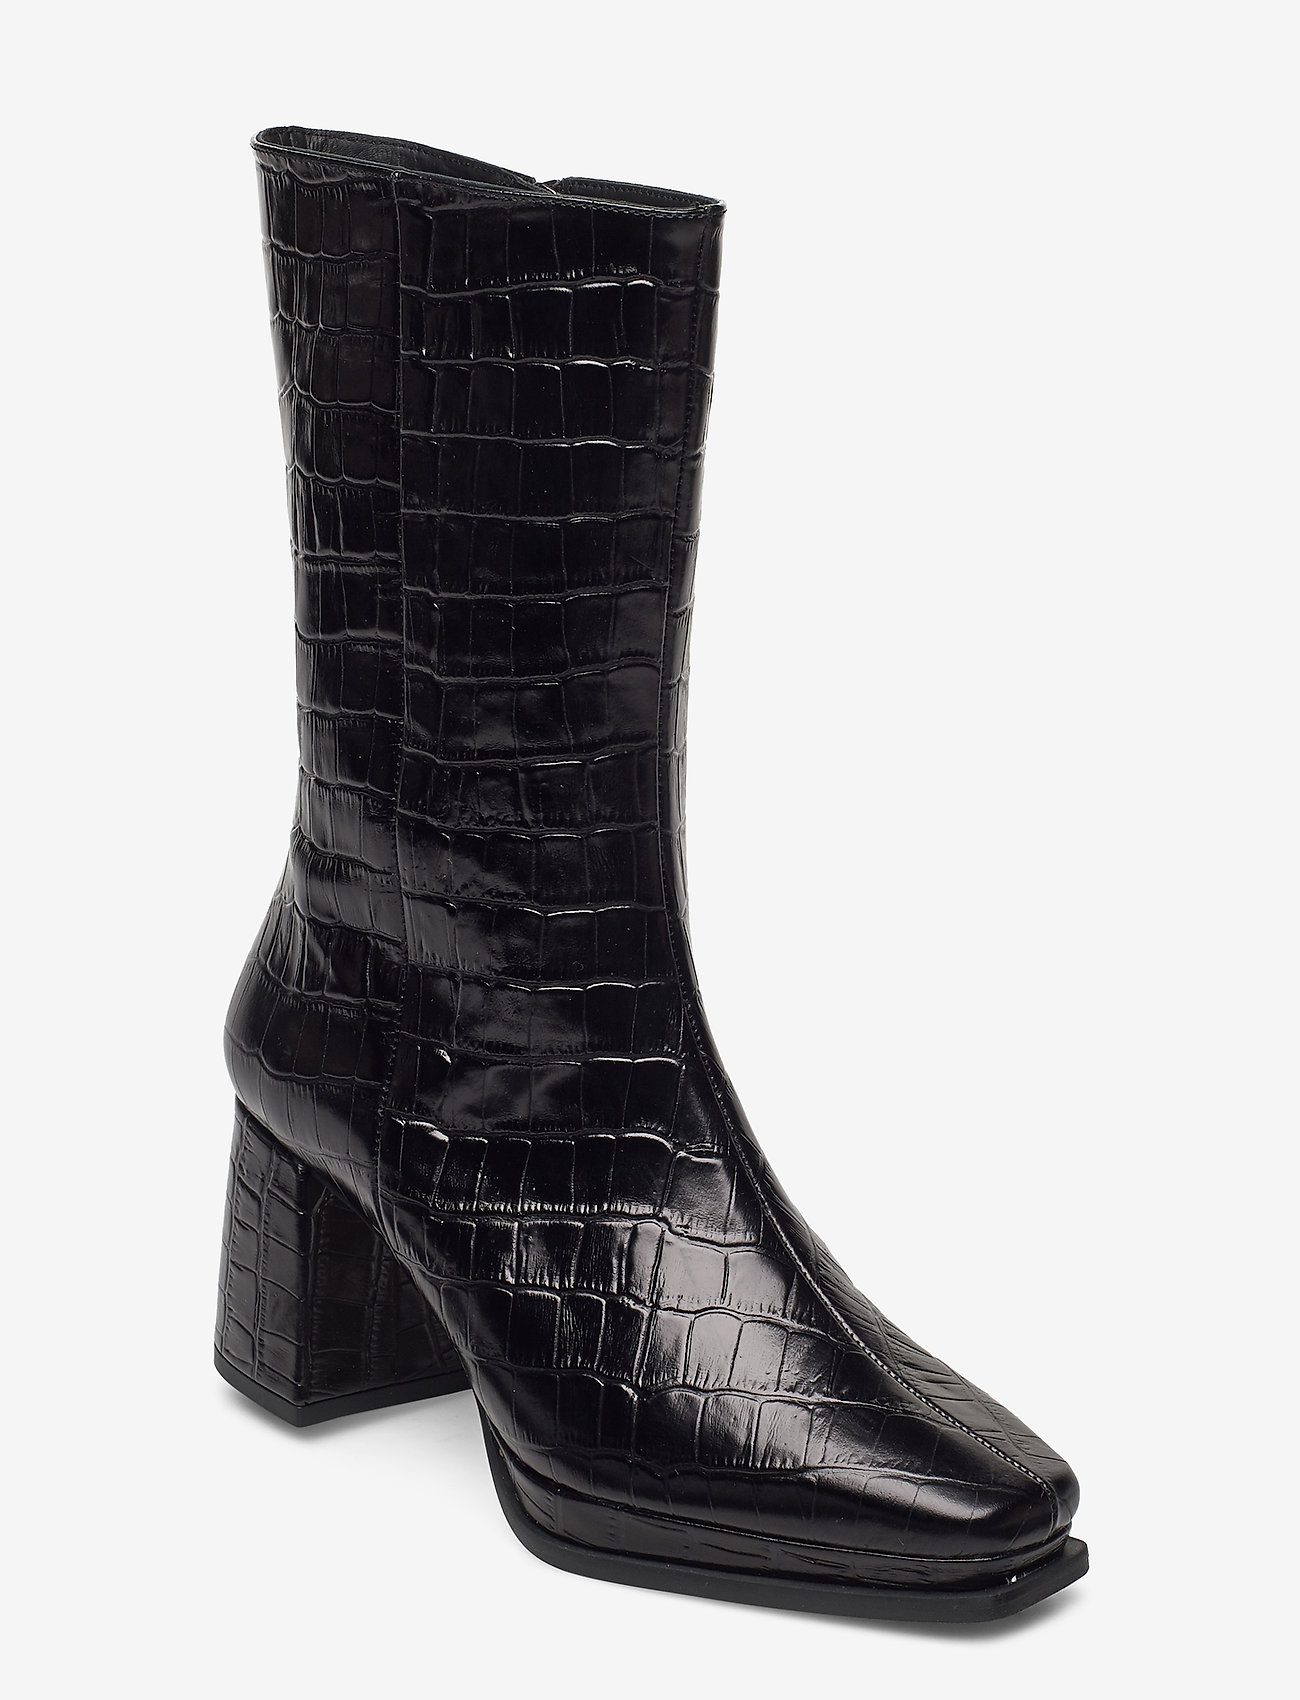 croco boots black